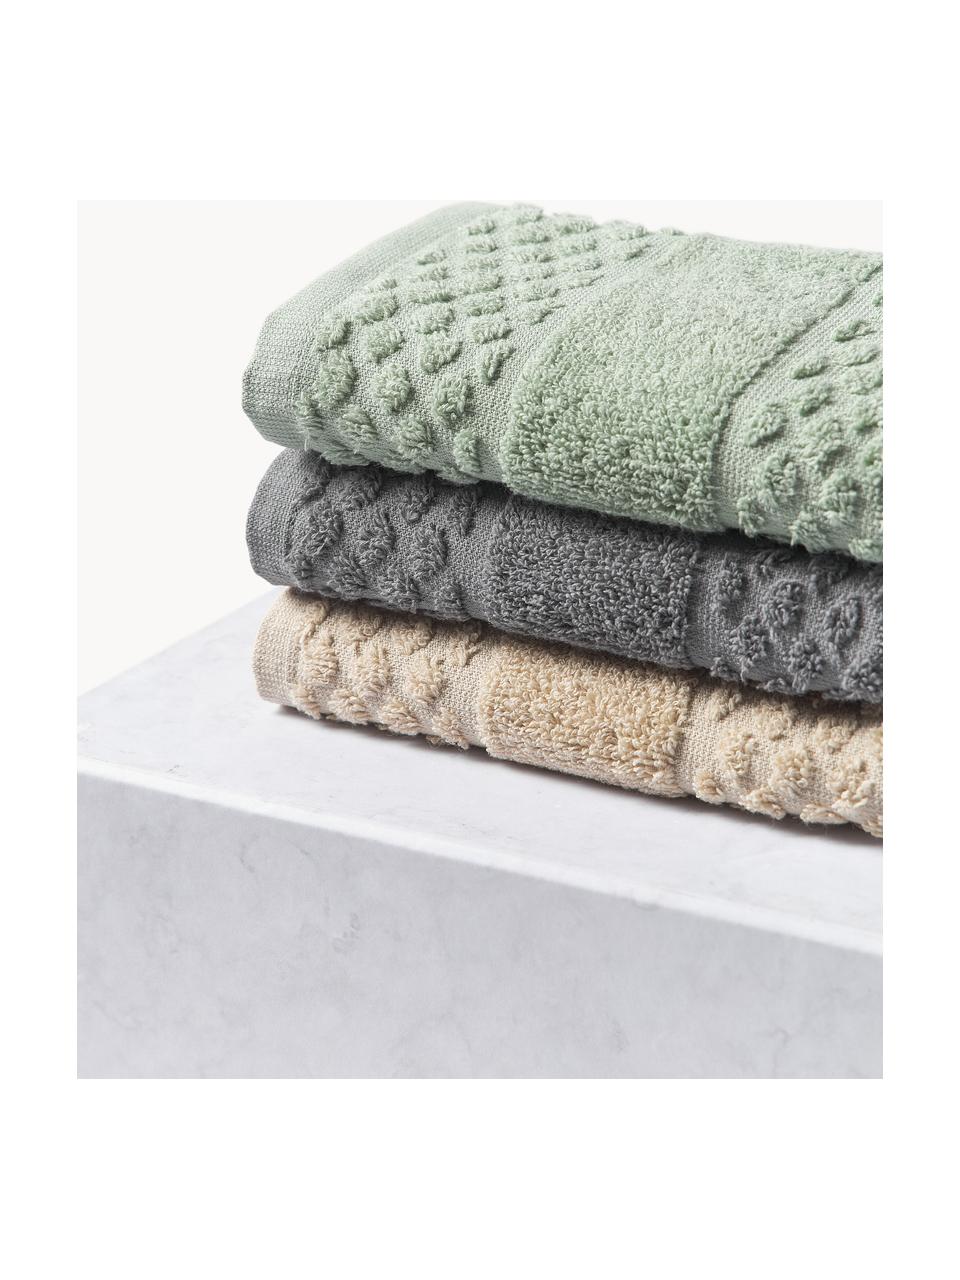 Komplet ręczników Katharina, różne rozmiary, Szałwiowy zielony, Komplet z różnymi rozmiarami